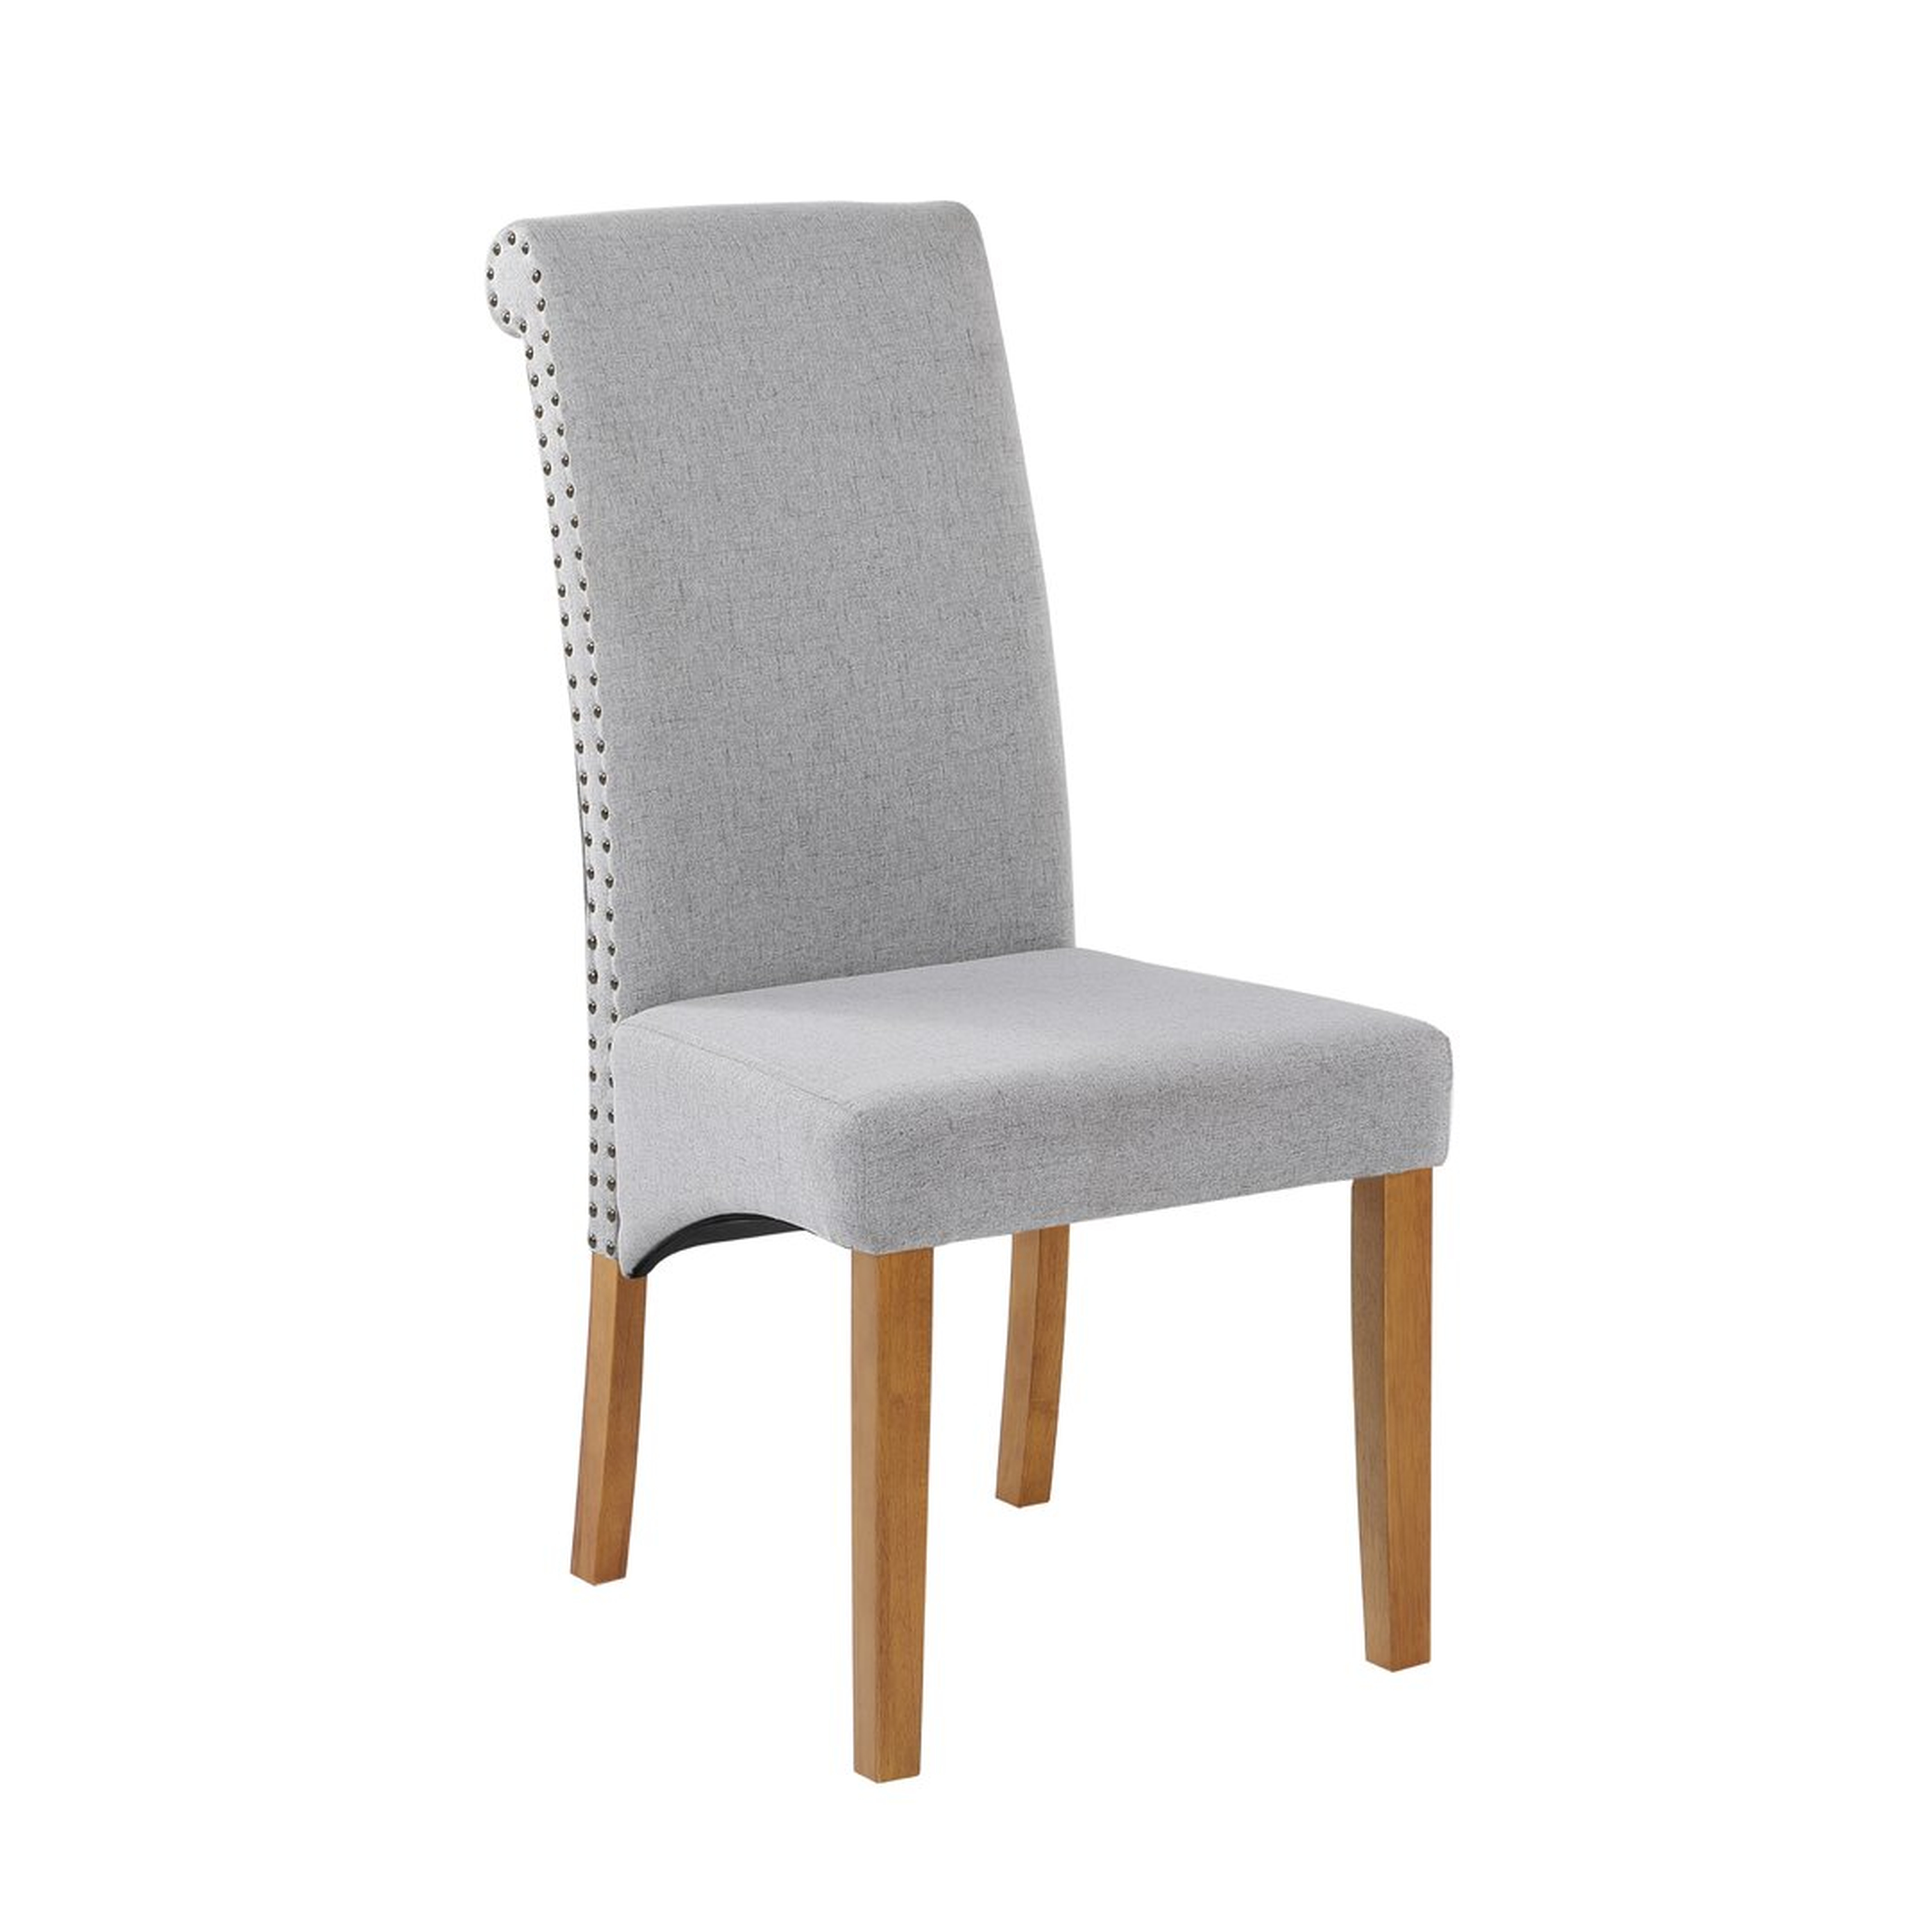 "Z-joyee Linen Parsons Chair" set of 6 - Perigold